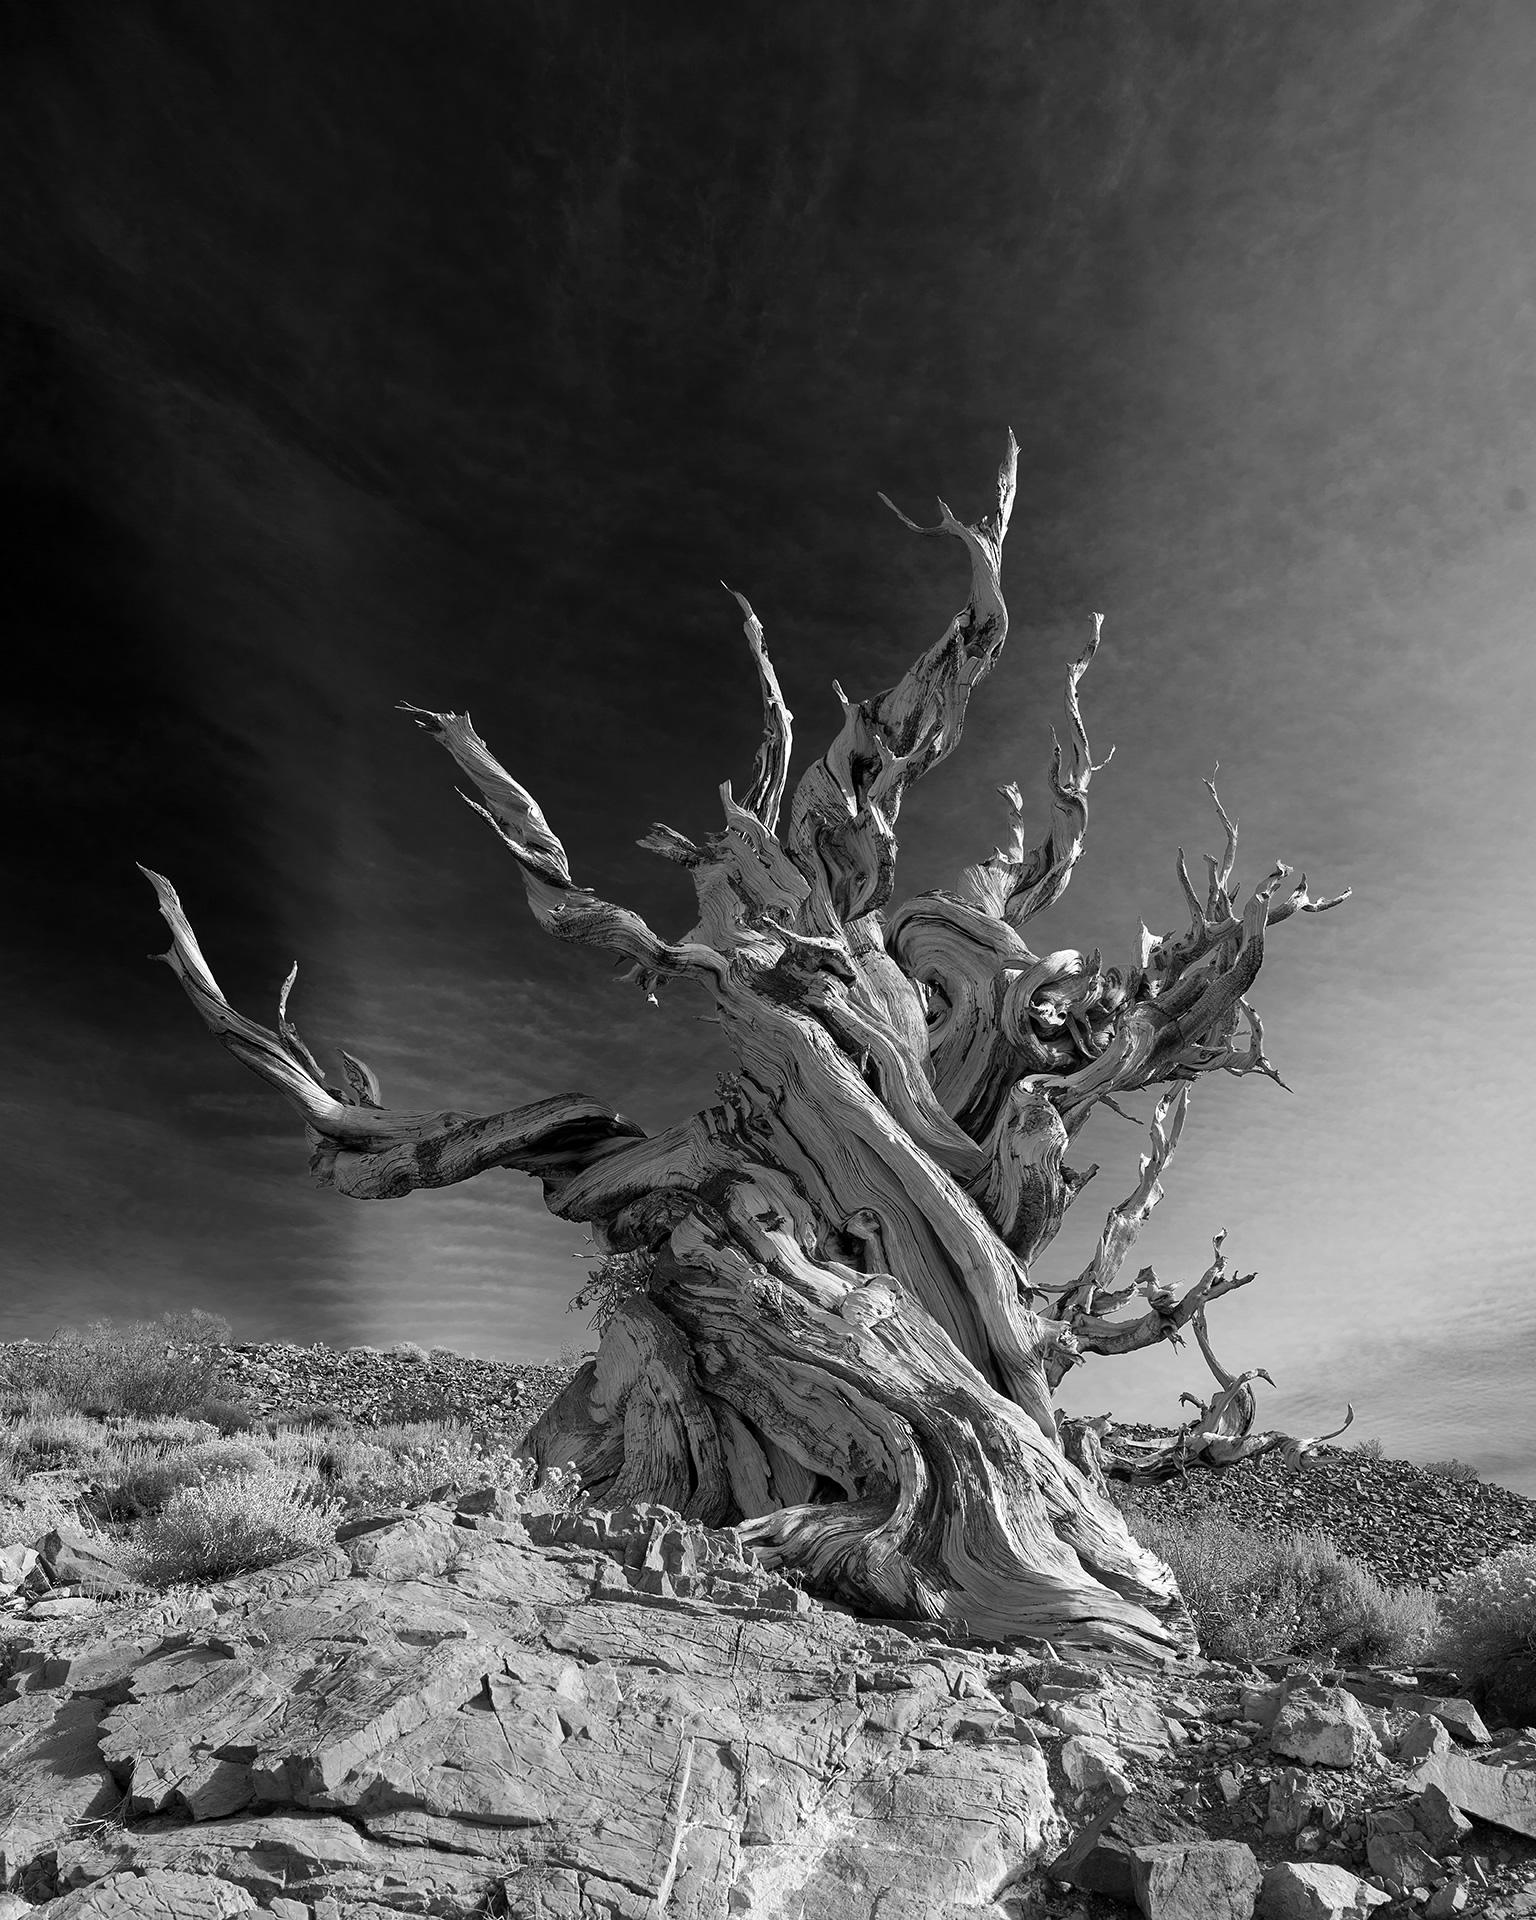 Frank Schott Black and White Photograph – Tree Study V – großformatige Fotografie einer dramatischen Berglandschaft